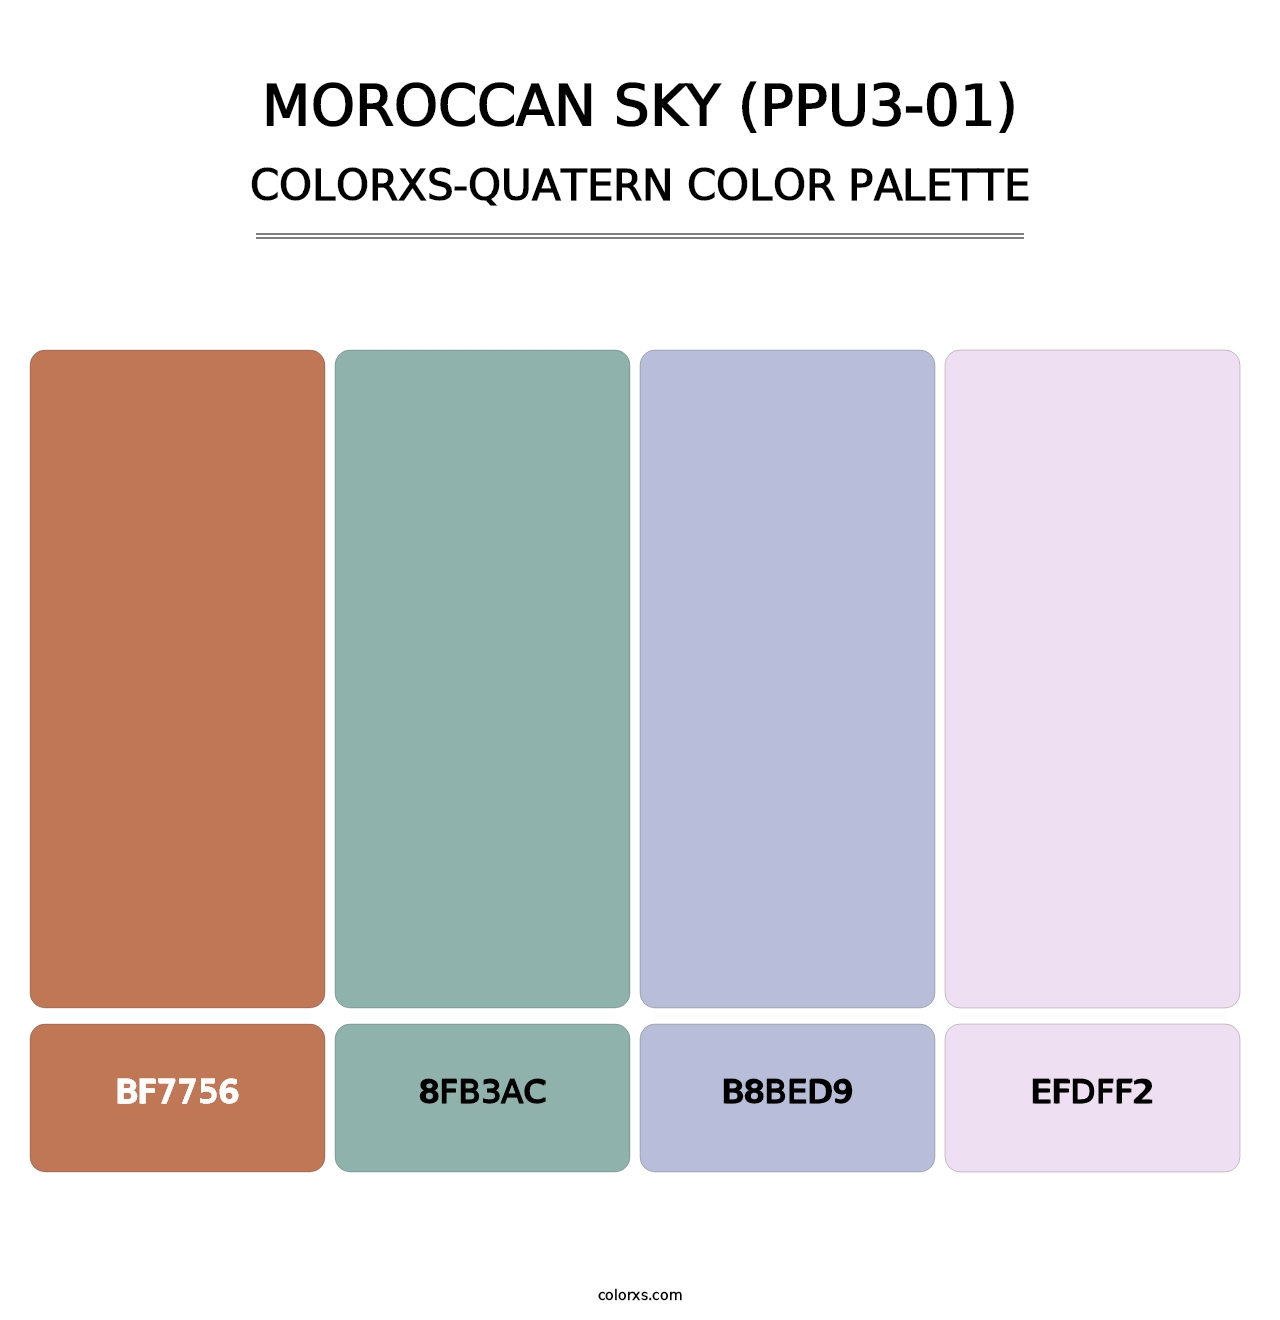 Moroccan Sky (PPU3-01) - Colorxs Quatern Palette